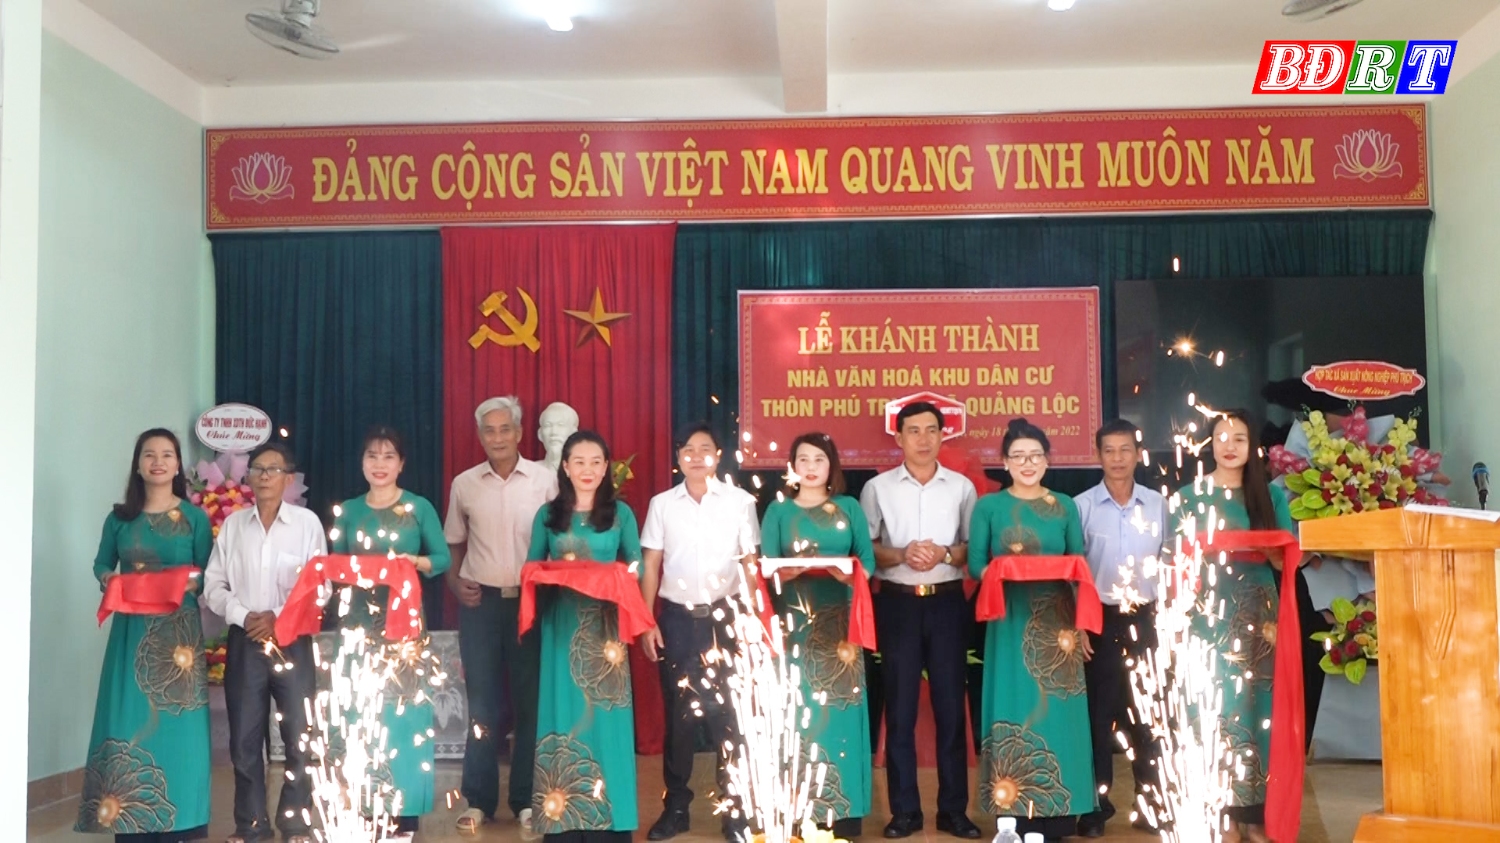 Lễ cắt băng khánh thành nhà văn hóa thôn Phú Trịch